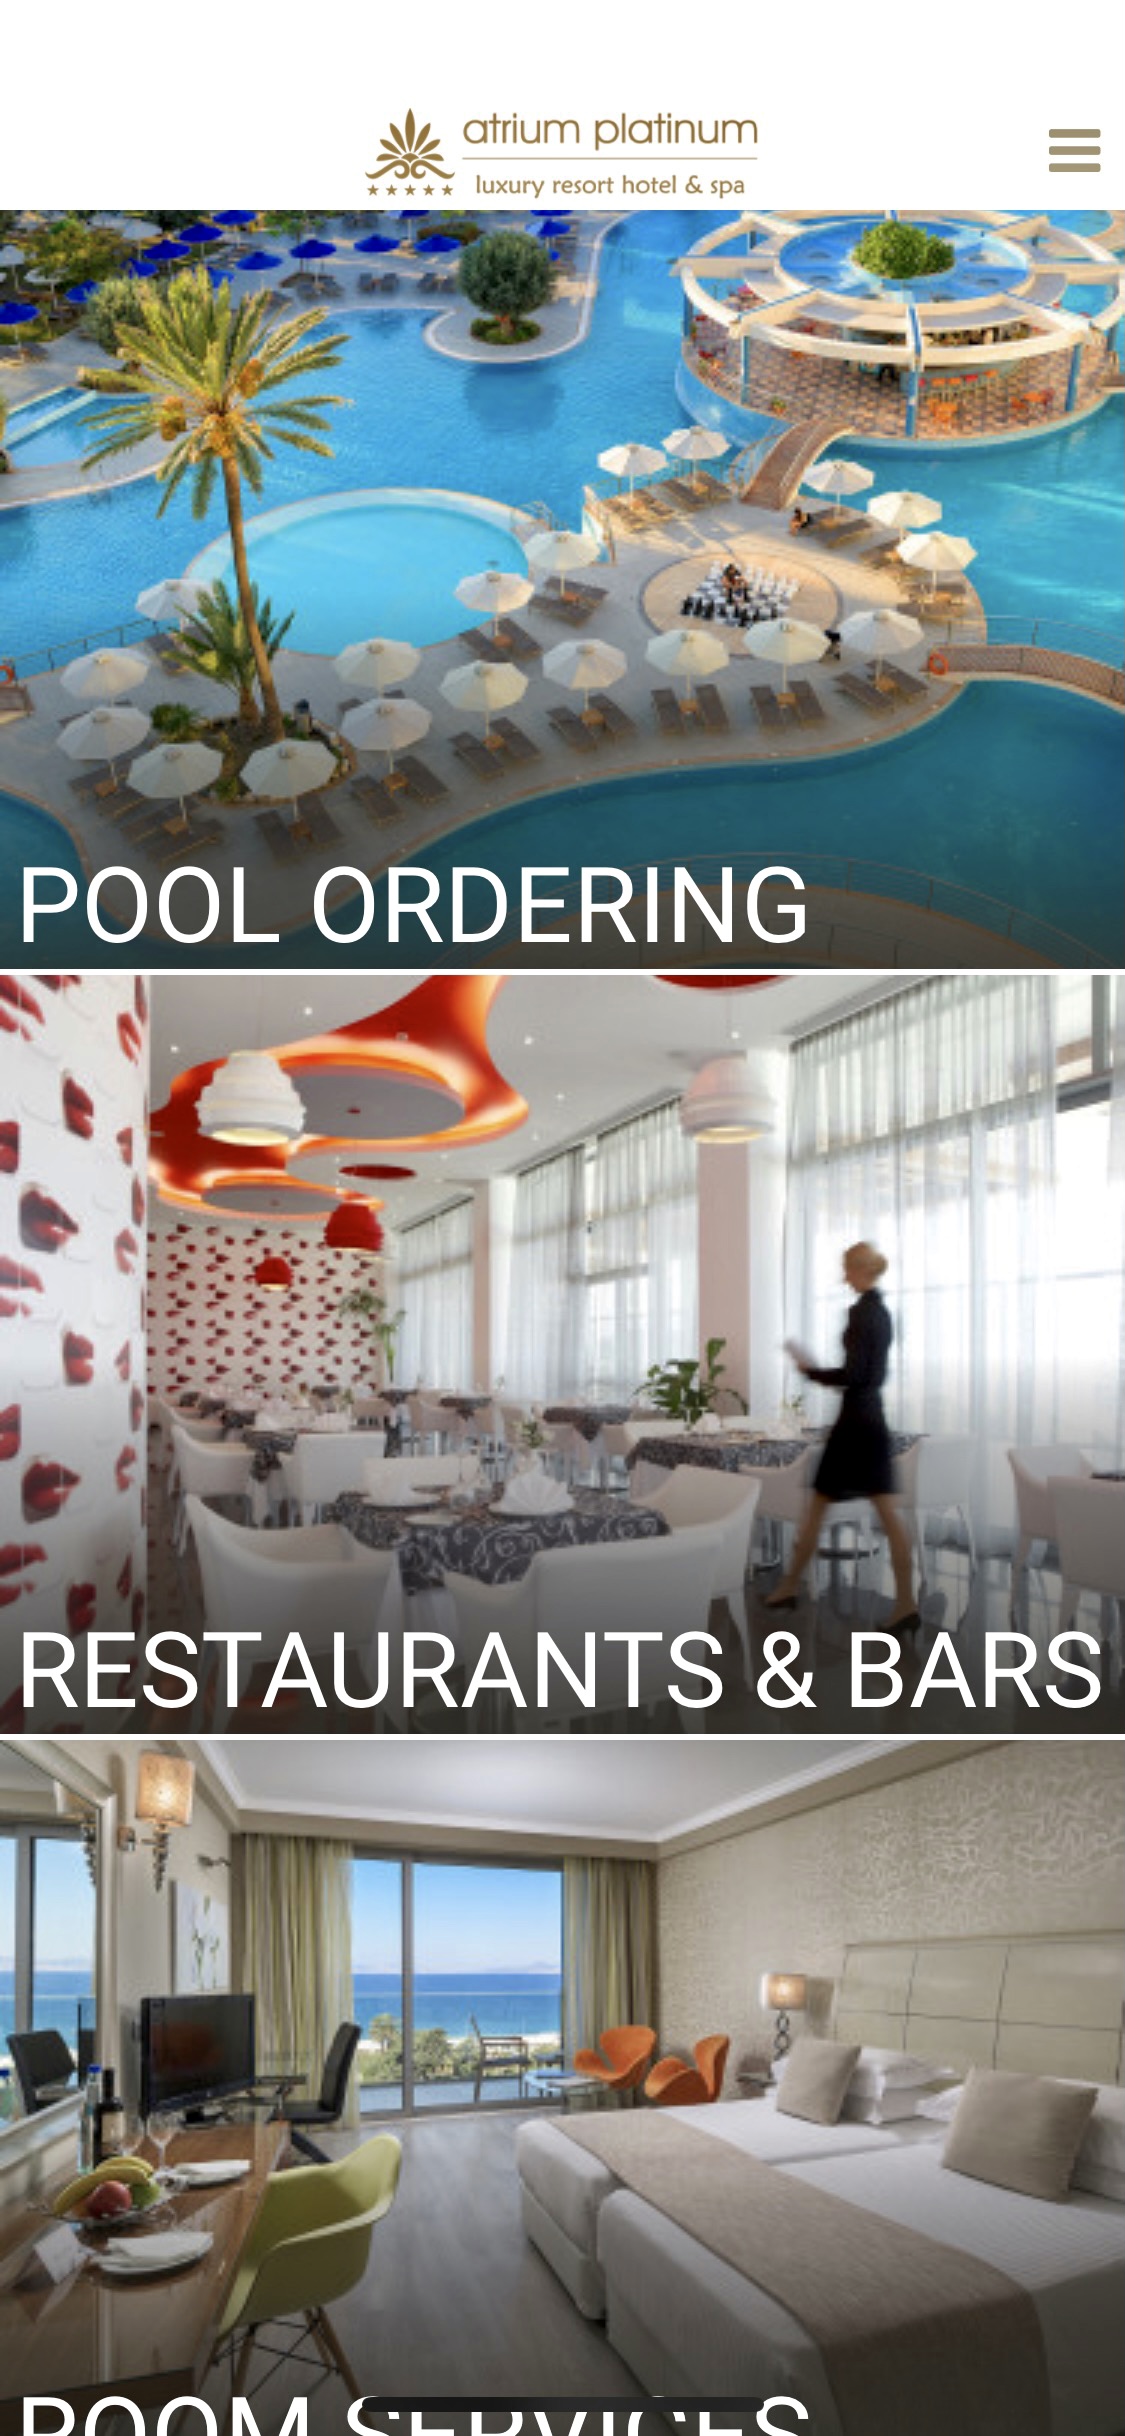 Holiday in Rhodes, Greece. Atrium Hotels. Atrium Platinum Resort Hotel & Spa. Best Hotels in Rhodes | Exclusivi App